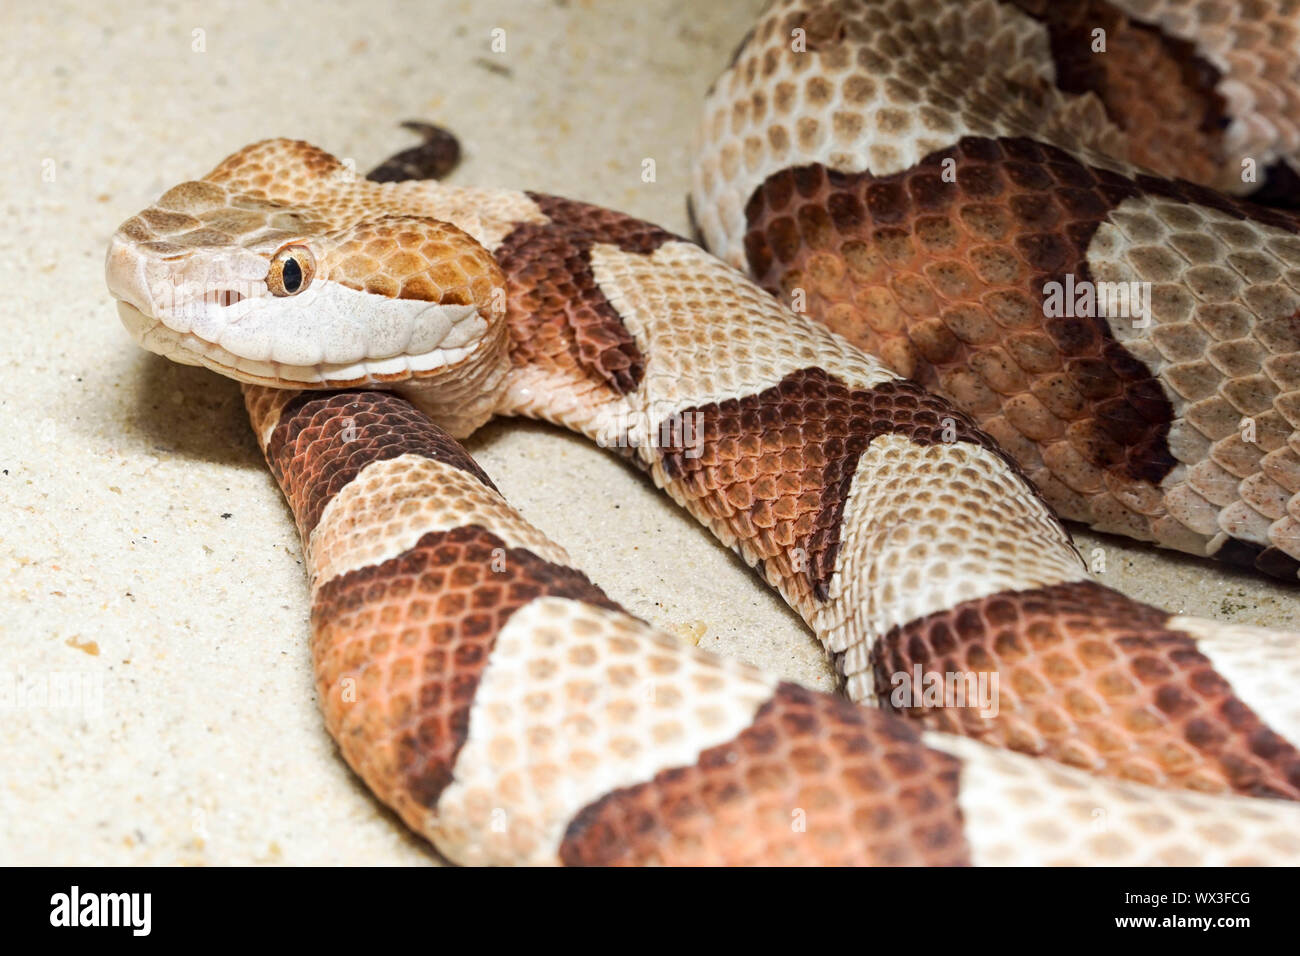 La Serpiente cabeza de cobre (copperhead) Foto de stock